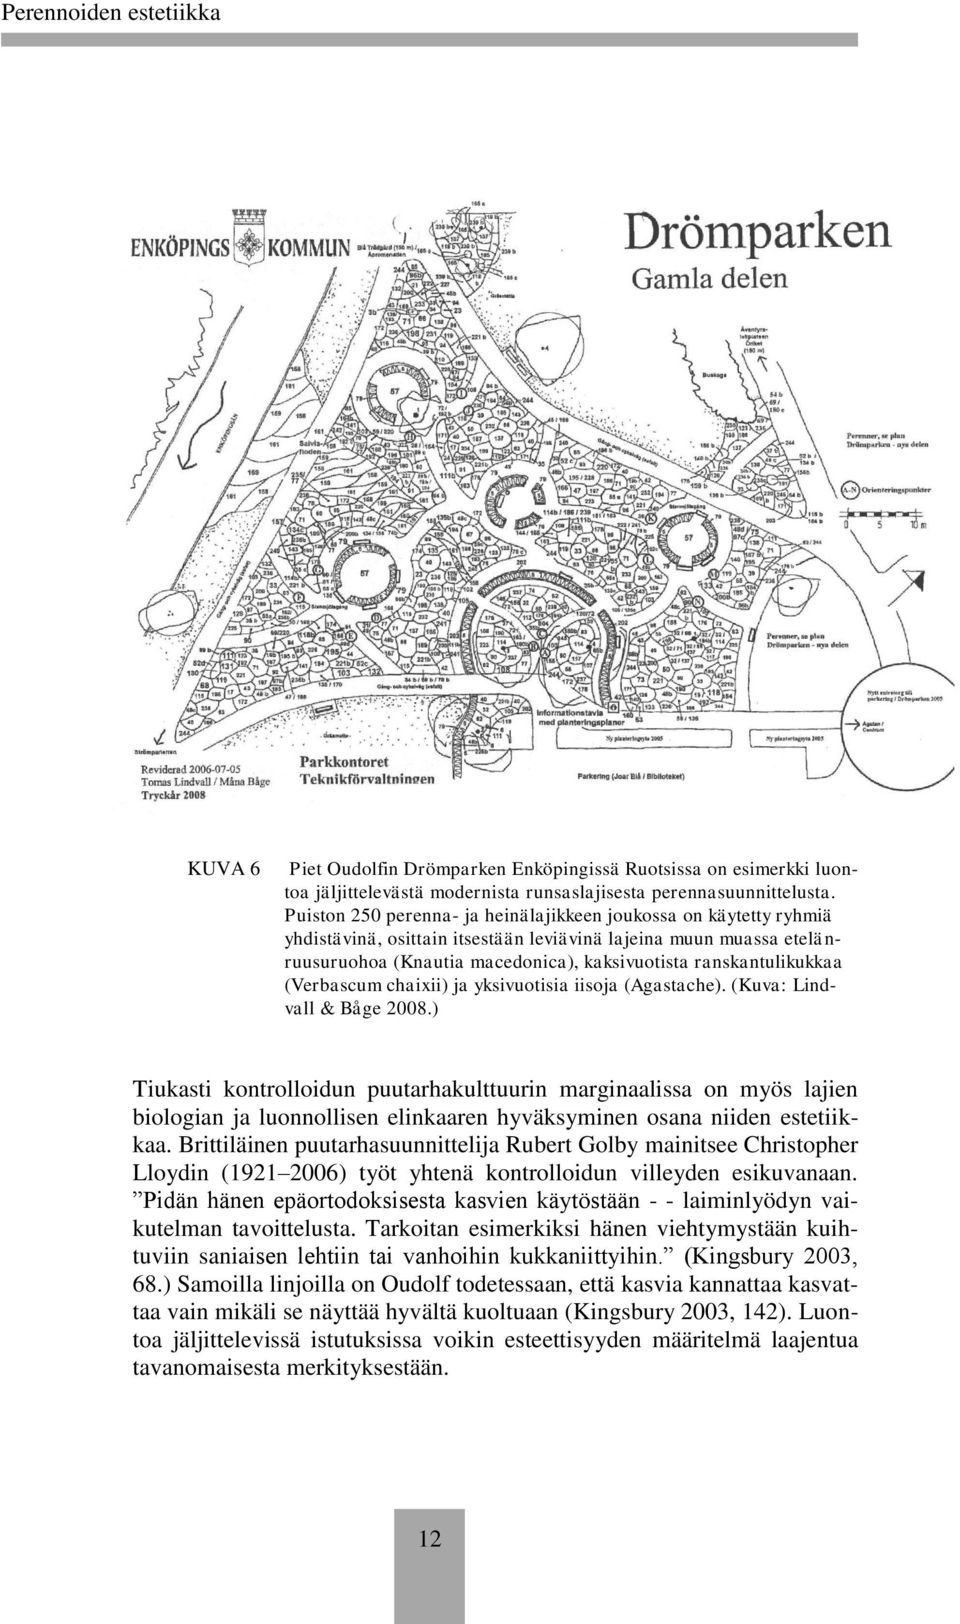 ranskantulikukkaa (Verbascum chaixii) ja yksivuotisia iisoja (Agastache). (Kuva: Lindvall & Båge 2008.